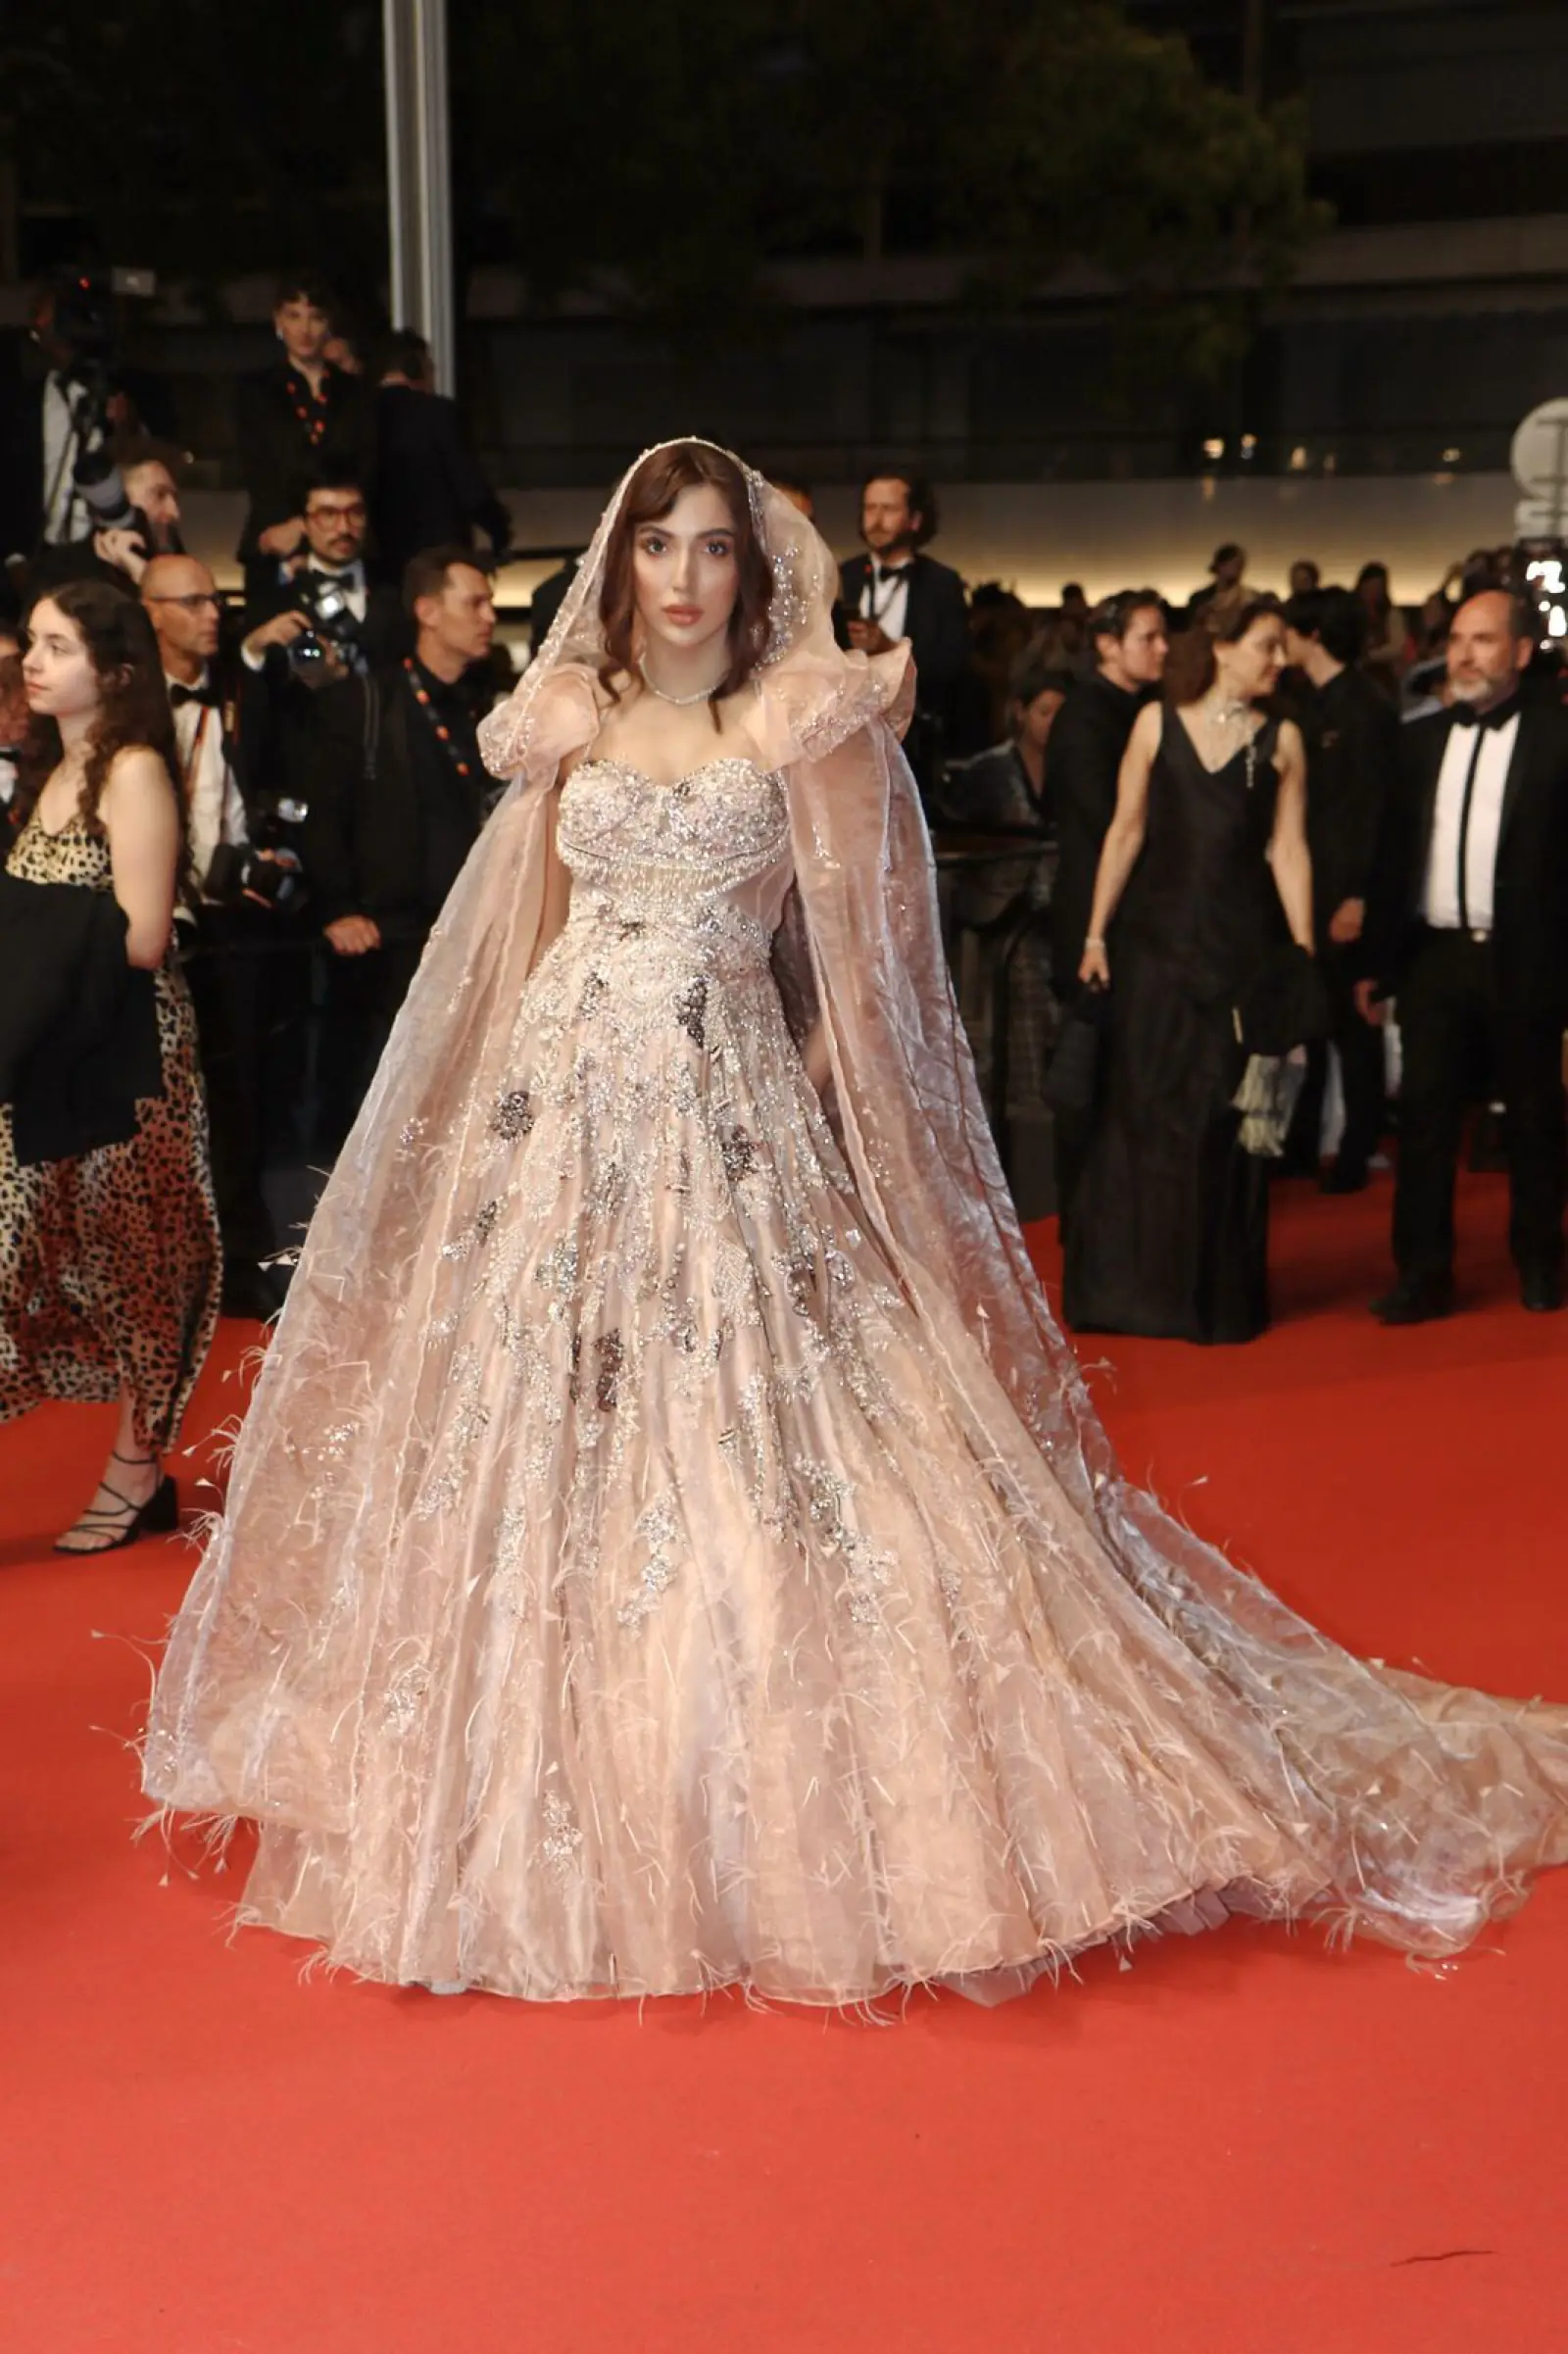 मिस इंडिया अरिसा खान ने कान्स रेड कार्पेट पर प्रतिष्ठित 'घूंघट' के साथ भारतीय संस्कृति का जश्न मनाया